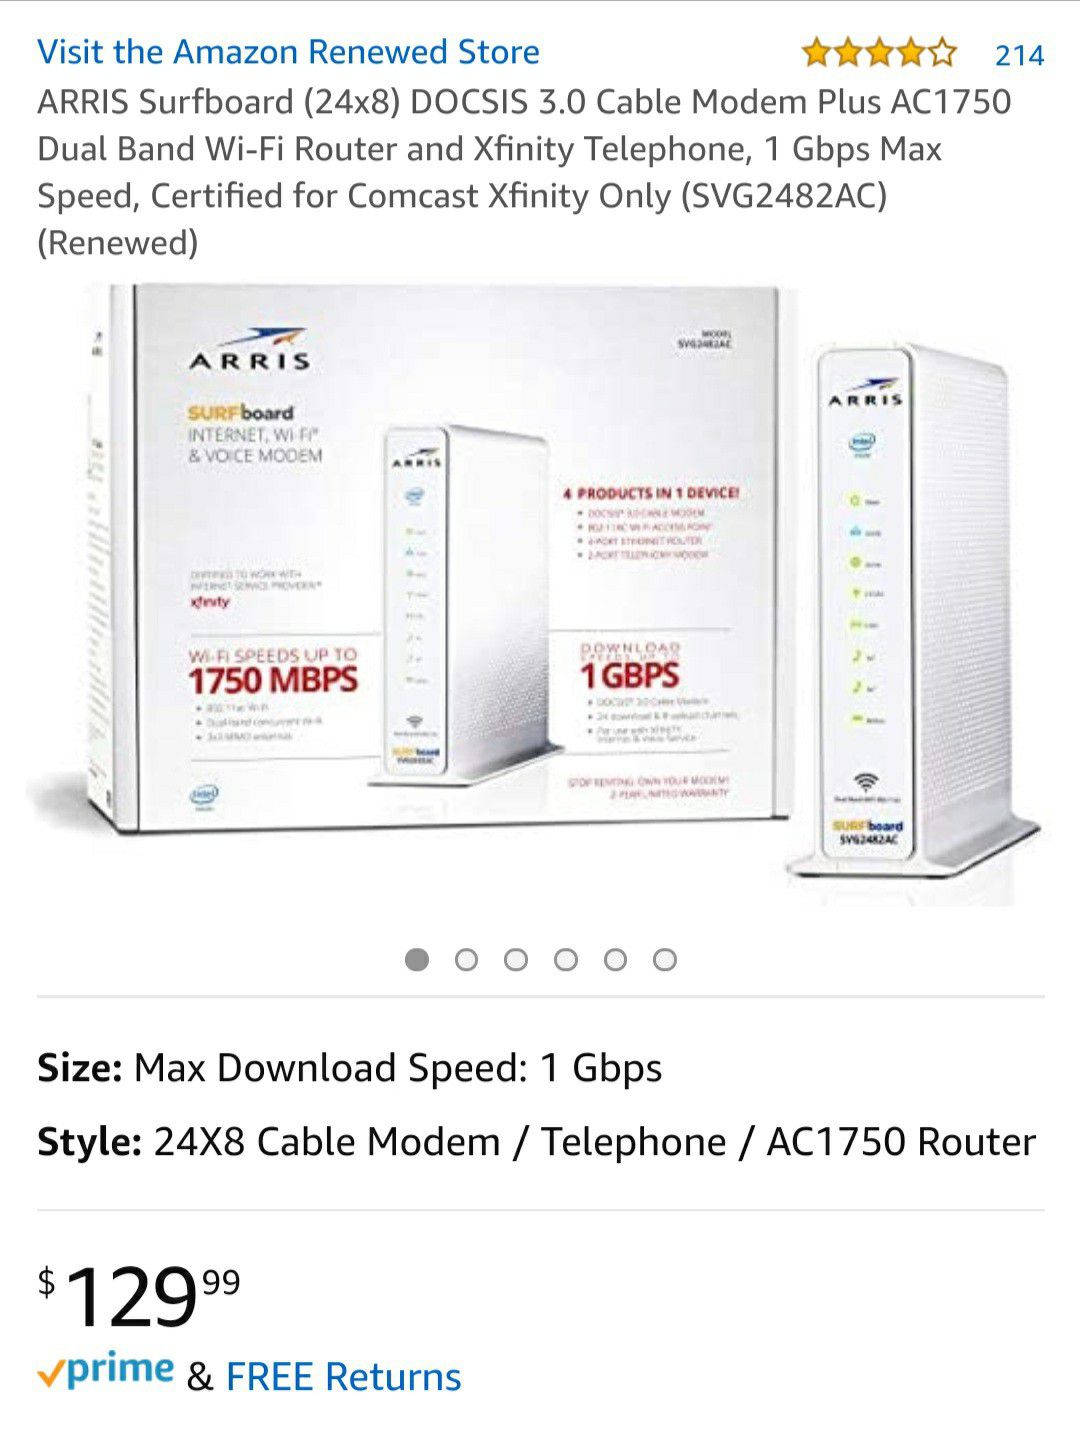 ARRIS Surfboard Internet, WiFi & Voice Modem